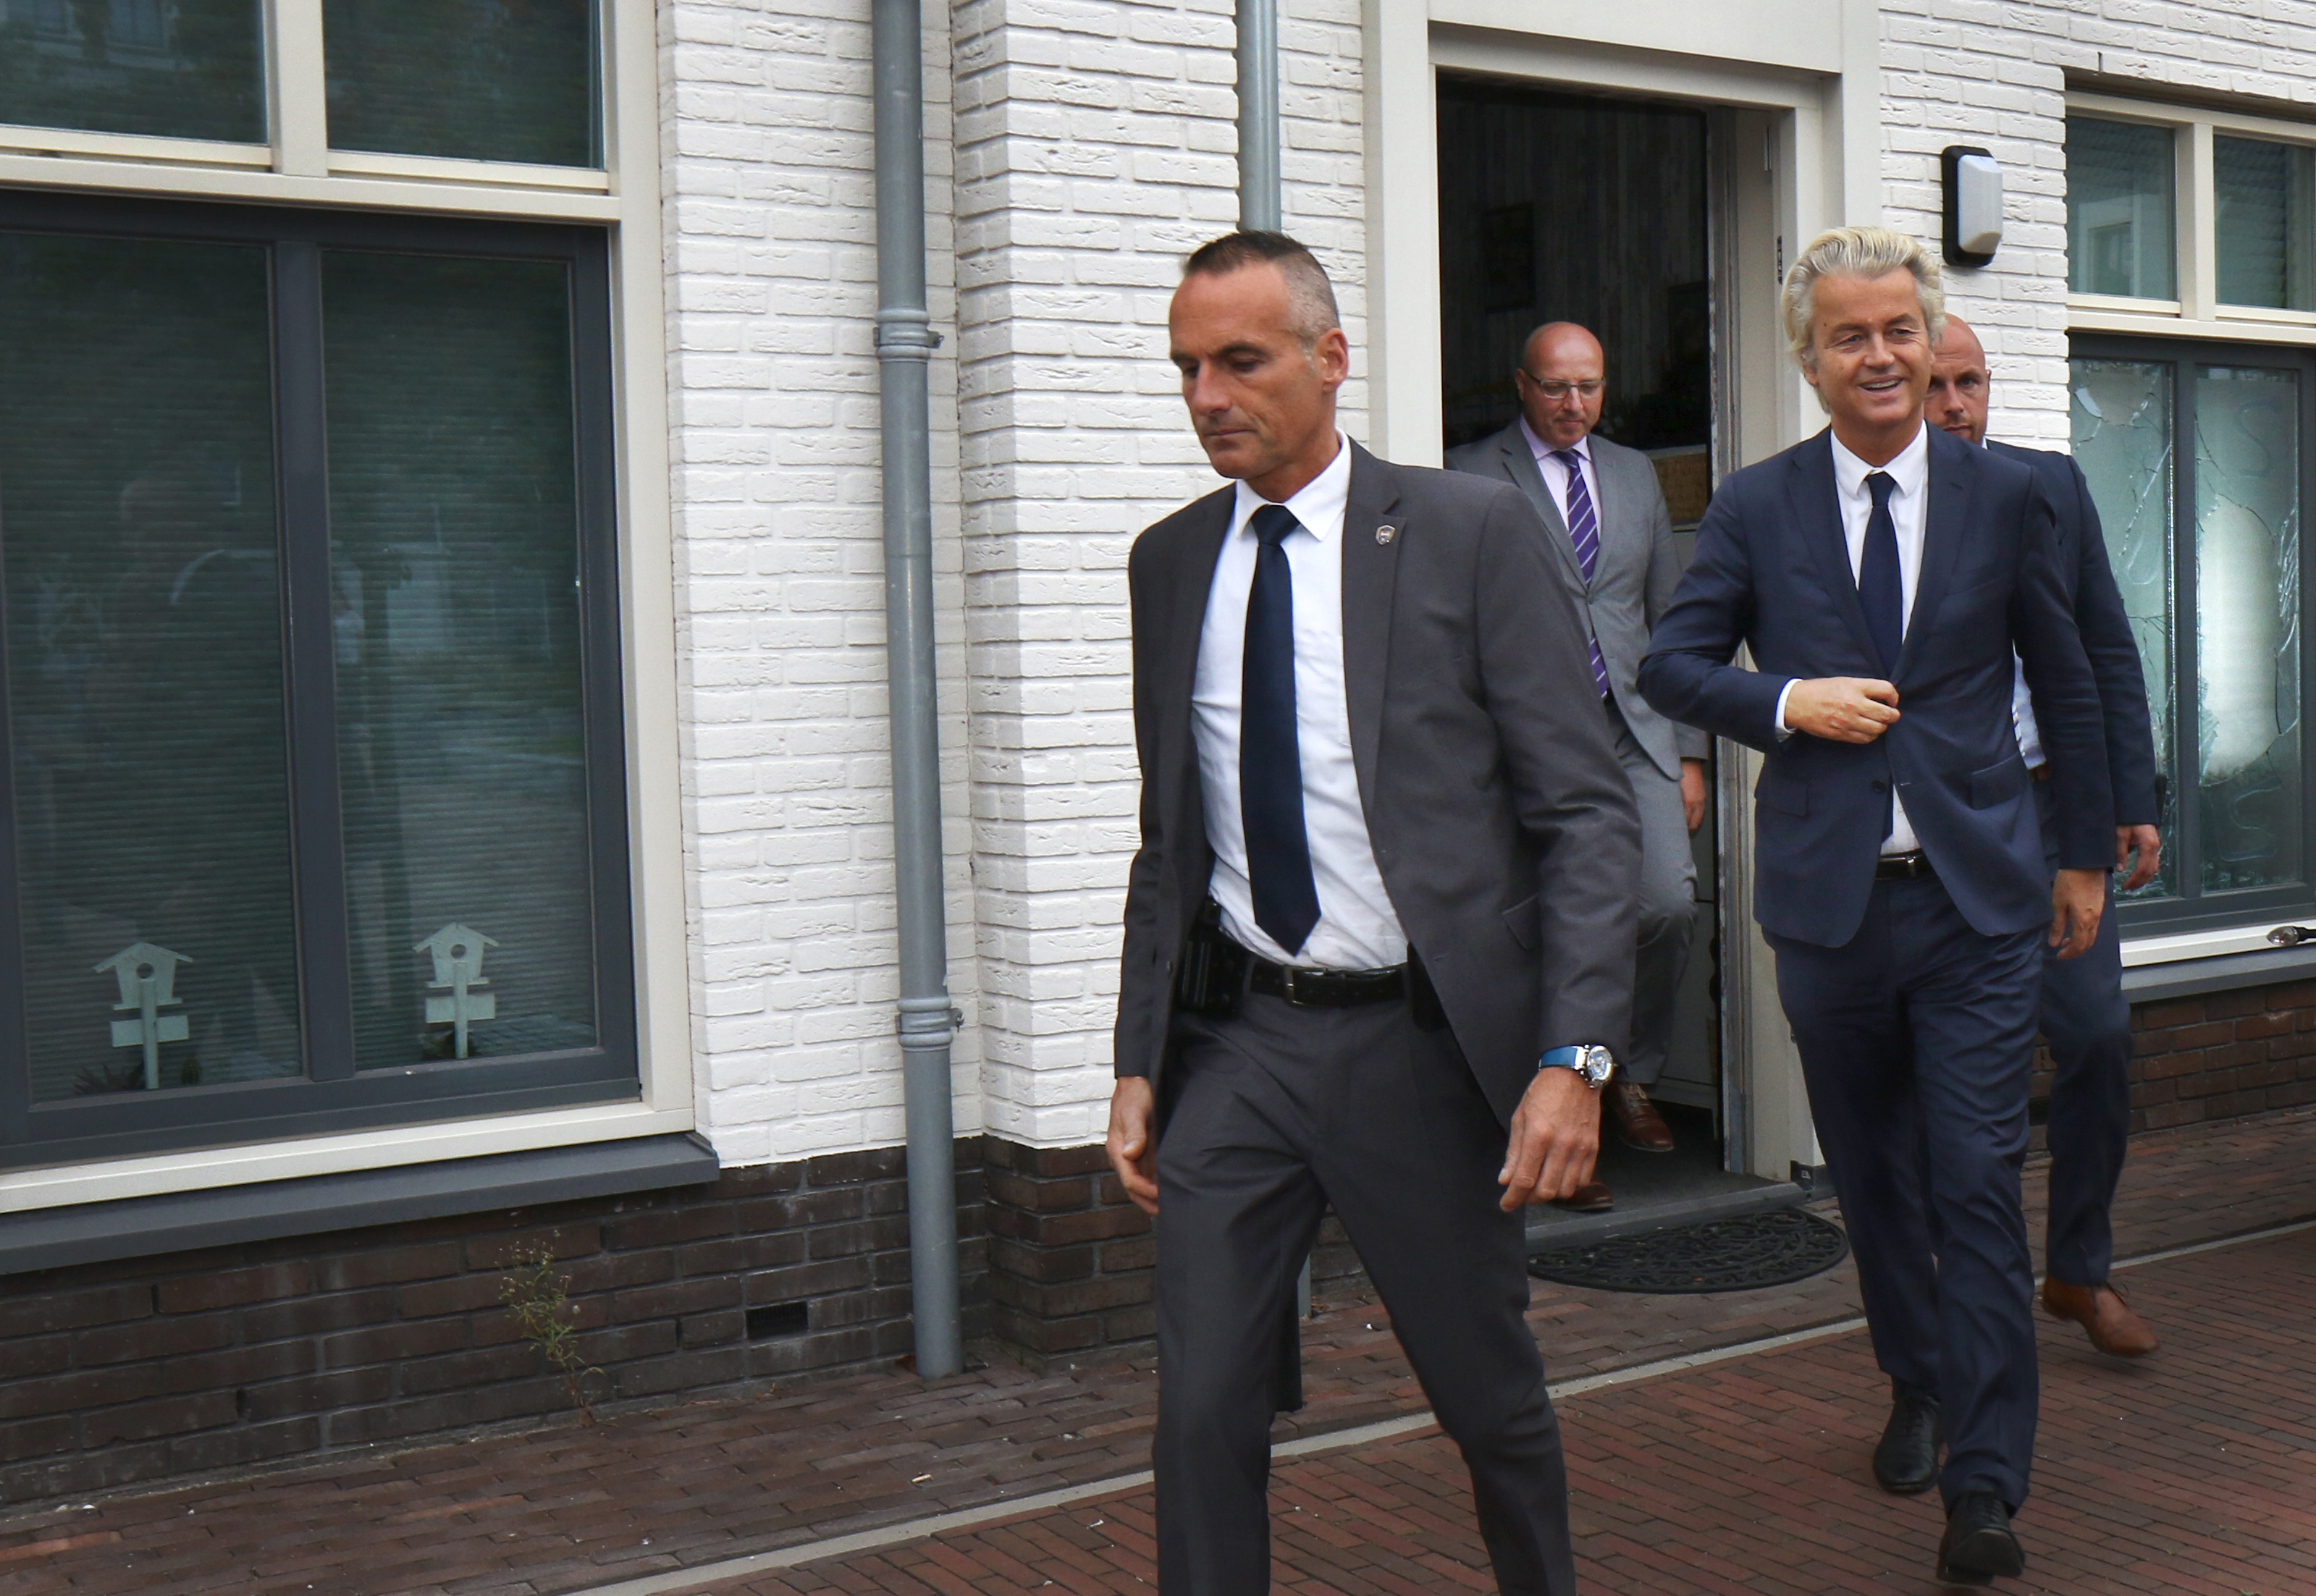 2016-09-27 18:05:27 MAASSLUIS - PVV-leider Geert Wilders tijdens een bezoek aan de Burgemeesterswijk in Maassluis , waar het de afgelopen tijd onrustig was. Bij bewoners werden ruiten ingegooid, bewoners werden bedreigd en auto's zijn vernield. In delen van Maassluis was het meerdere weekeinden onrustig. ANP MEDIATV.NL